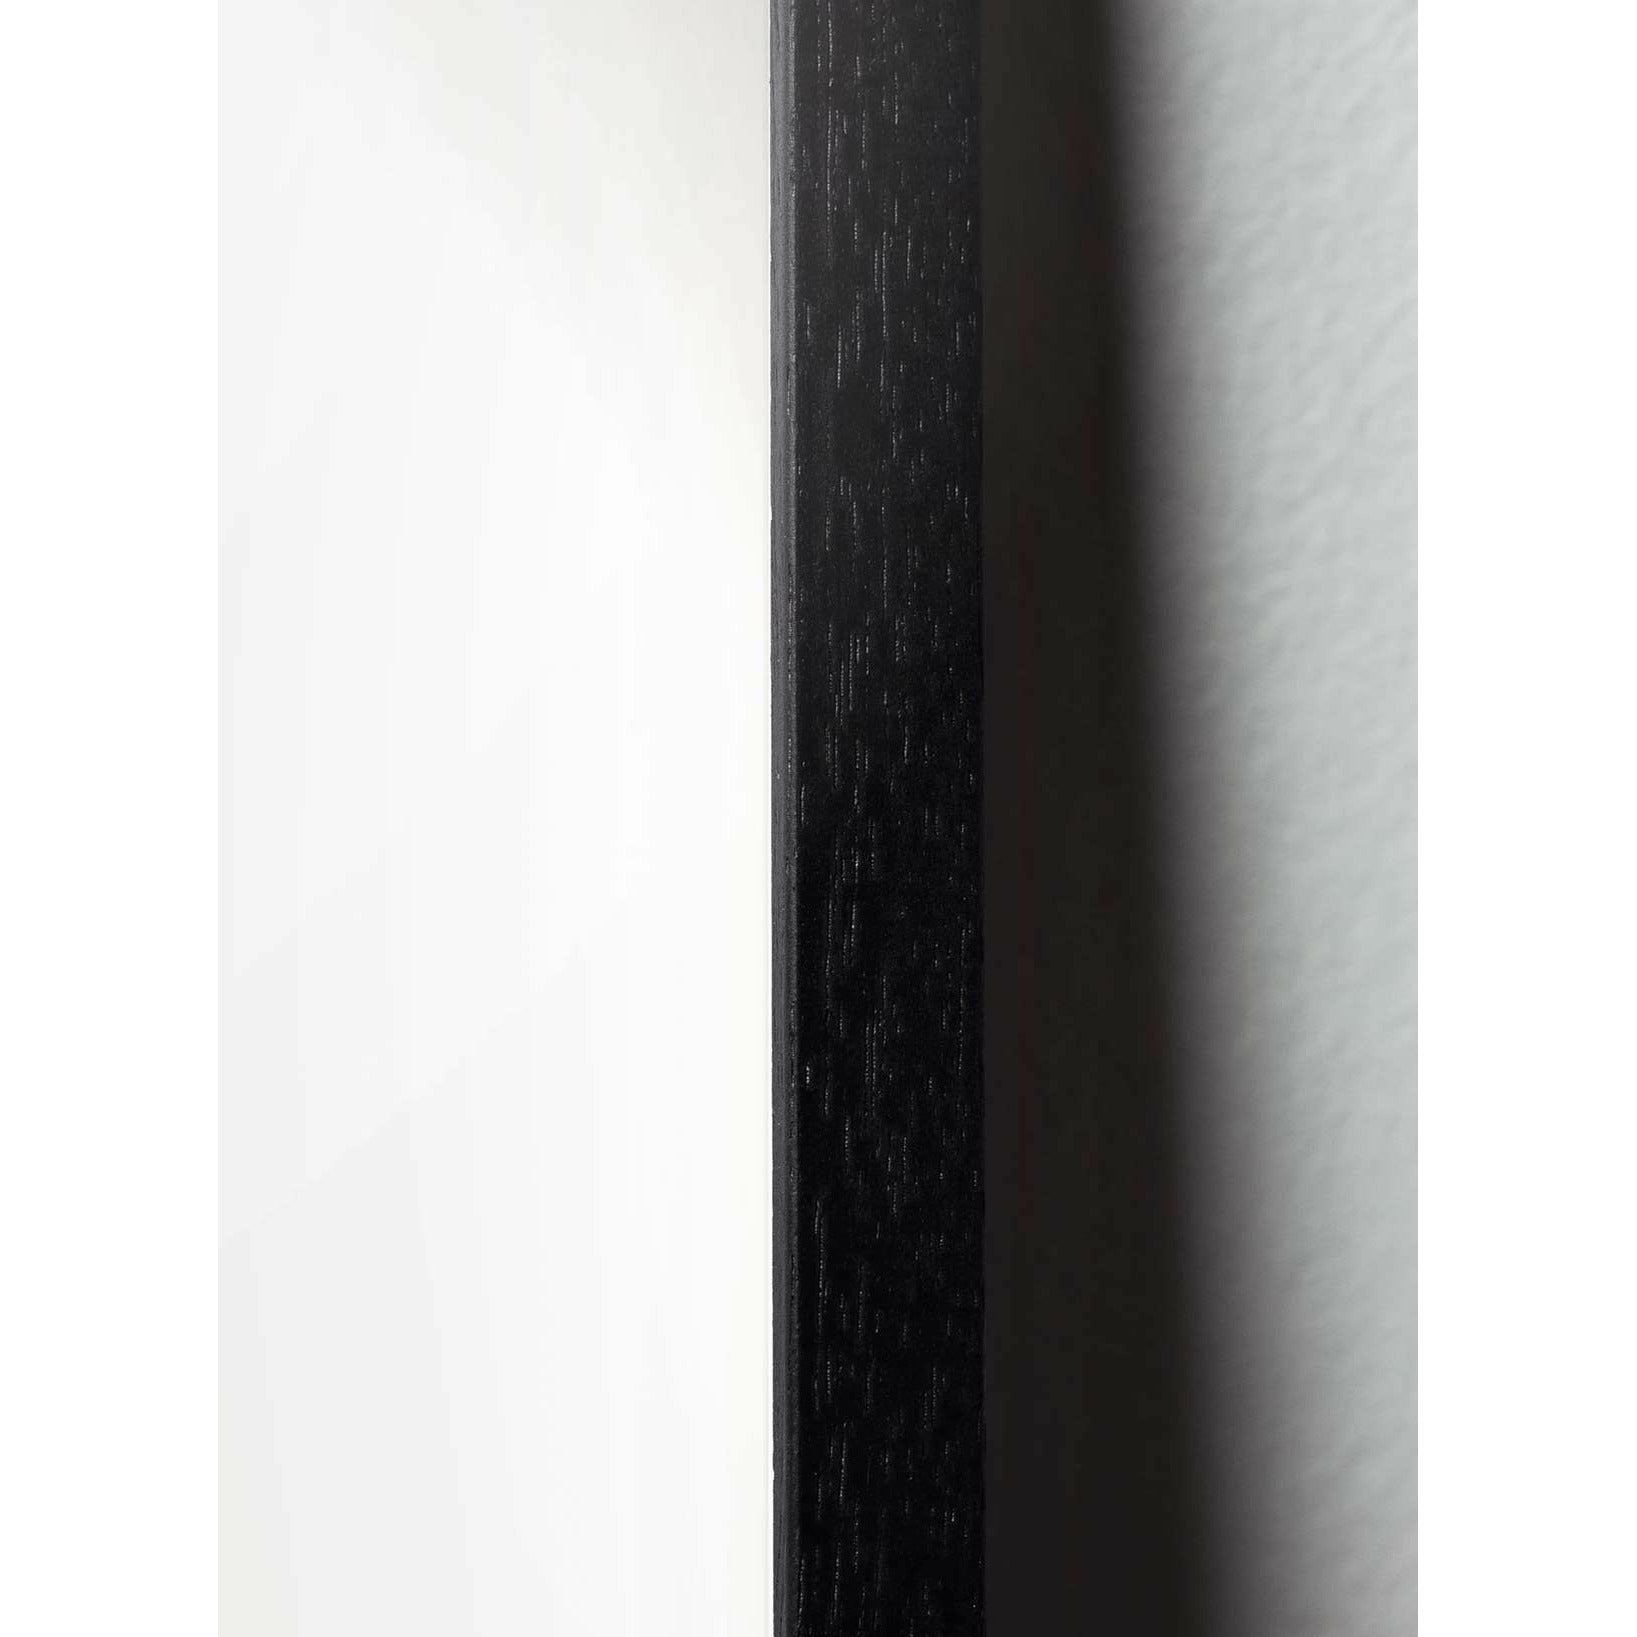 Brainchild Swan Line Poster, Rahmen aus schwarz lackiertem Holz 50x70 cm, weißer Hintergrund